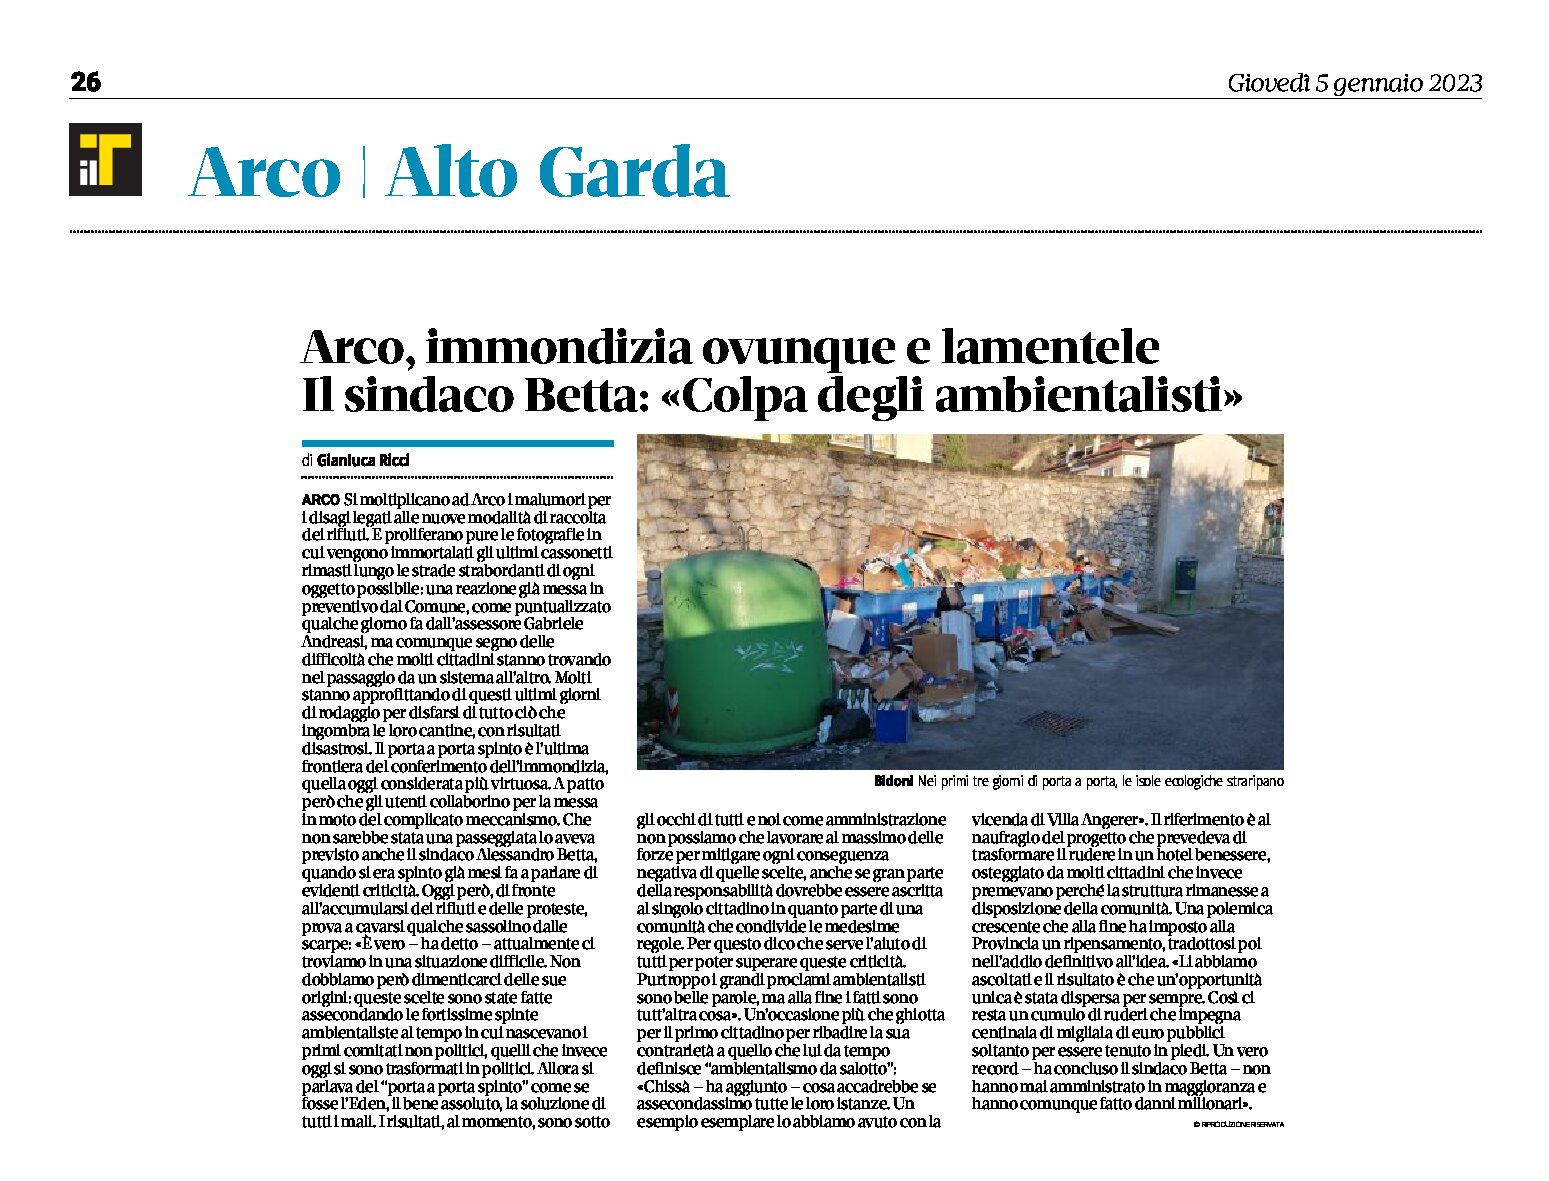 Arco: immondizia ovunque, il sindaco Betta “colpa degli ambientalisti”